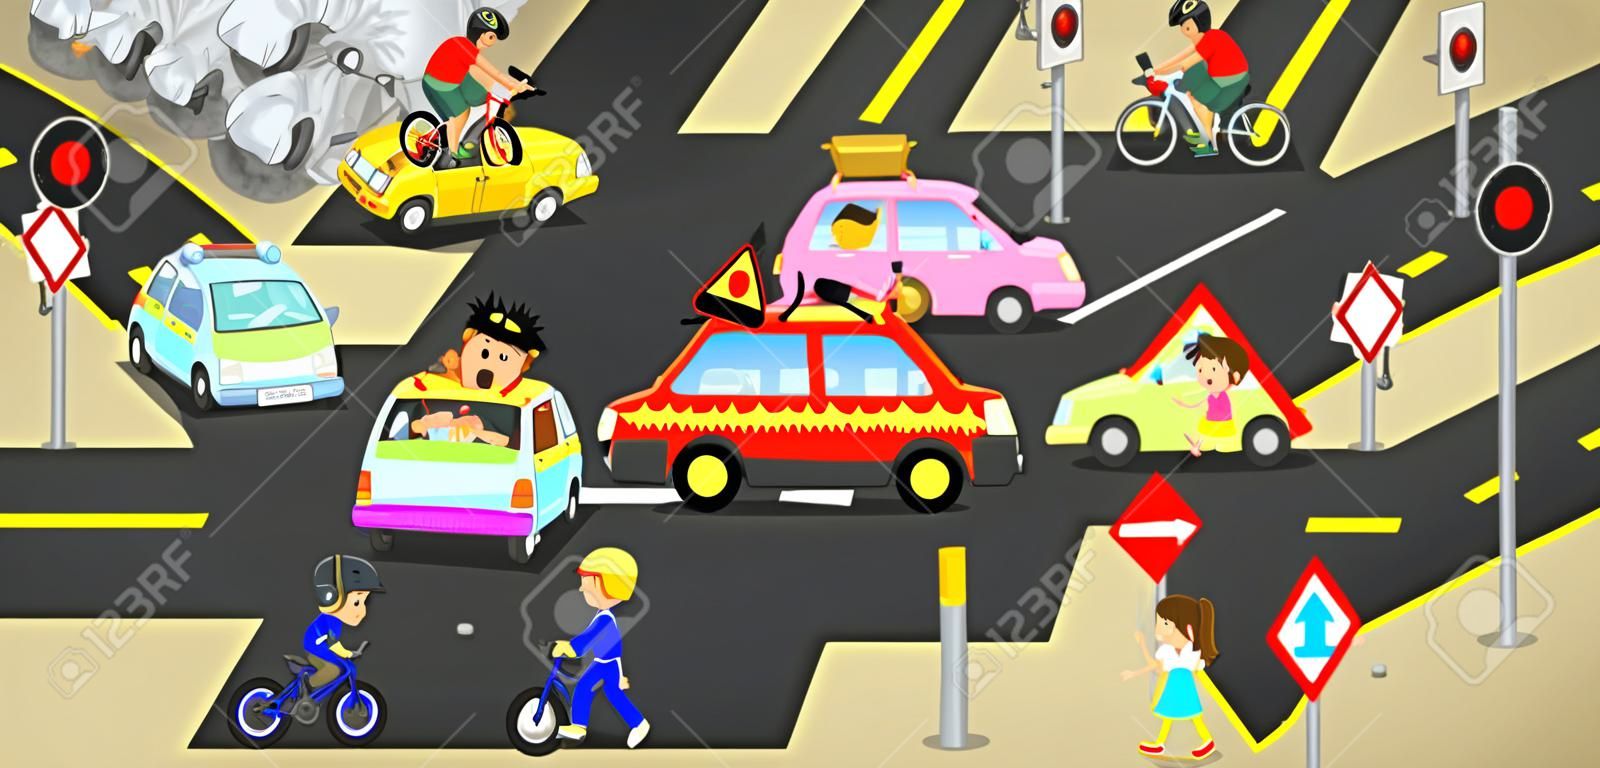 Accidentes, lesiones, el peligro y la precaución de seguridad en los vehículos de carretera de tráfico causan por los coches y bicicletas gente descuidada en la calle urbana con el signo y el símbolo en concepto de divertidos dibujos animados lindo para los niños, crear por el vector